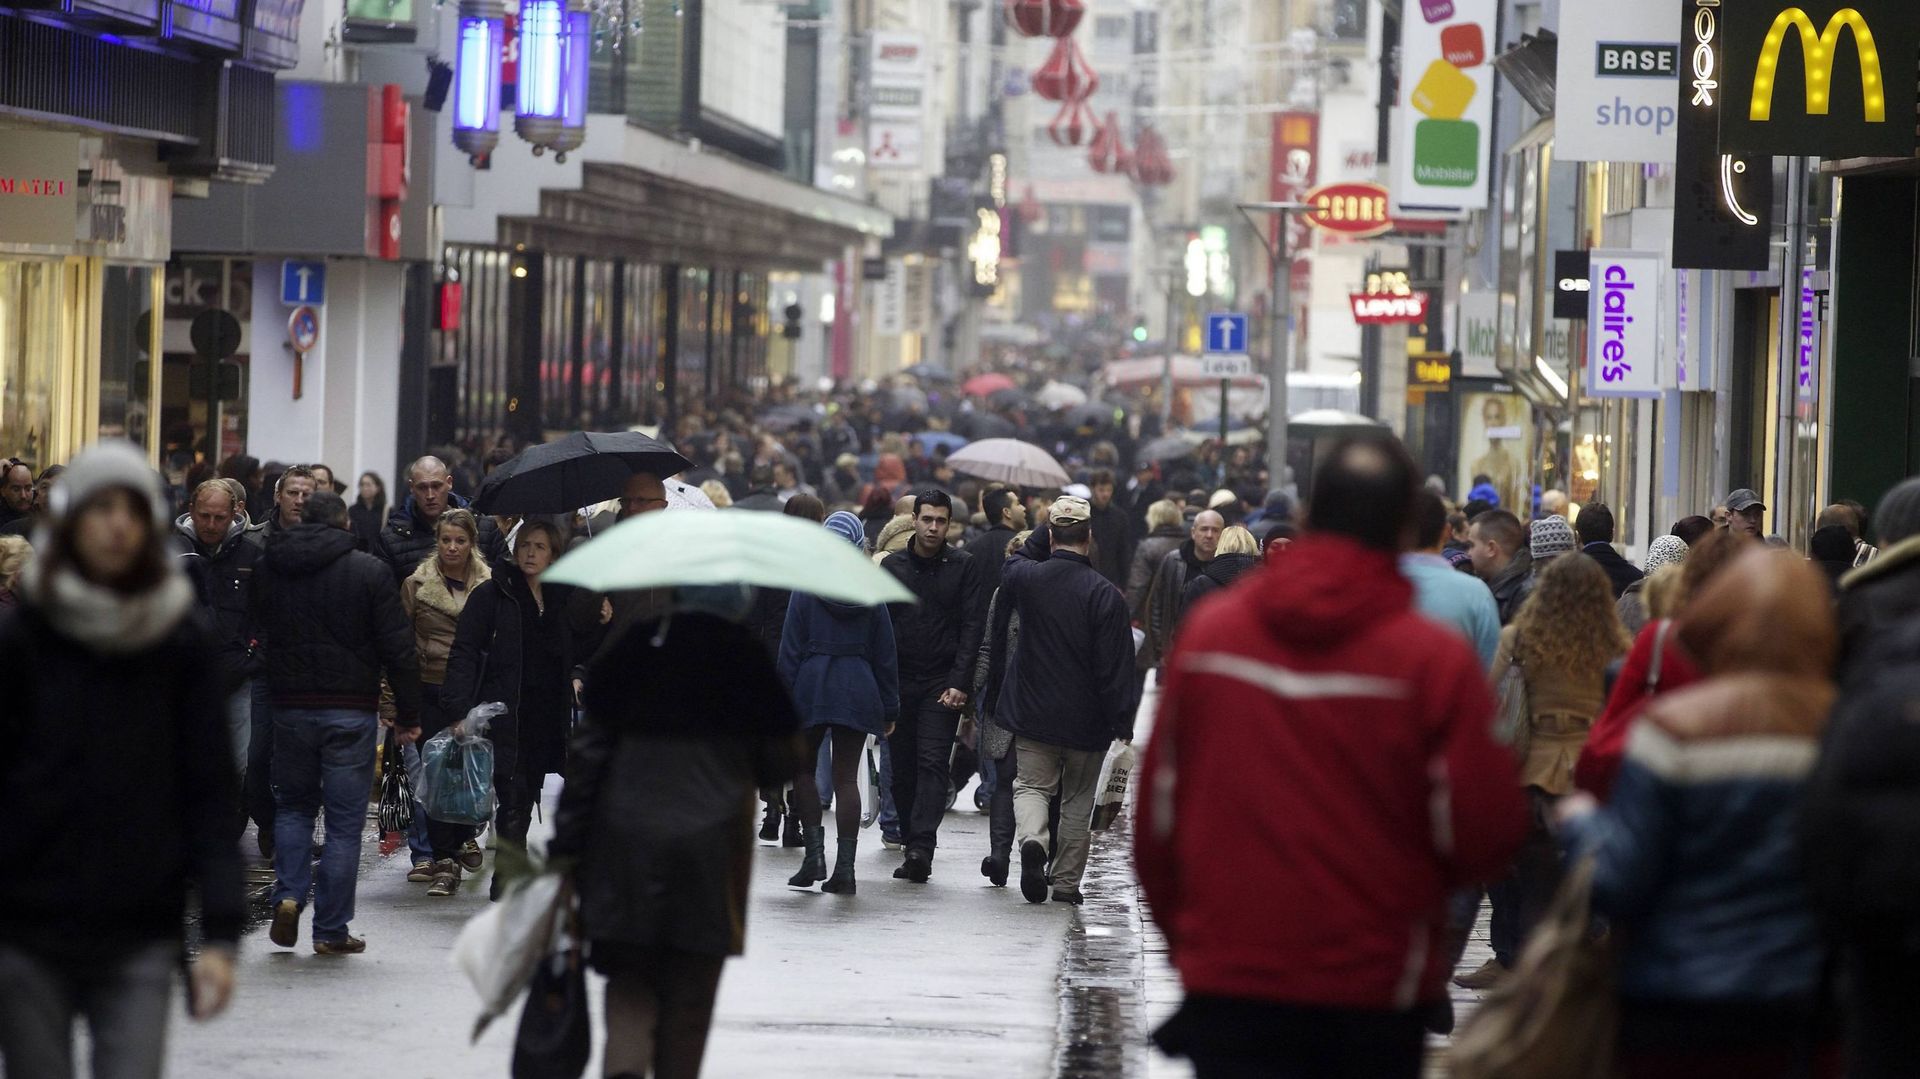 Sunday Shopday: en Europe, tout le monde n'a pas la même conception du dimanche